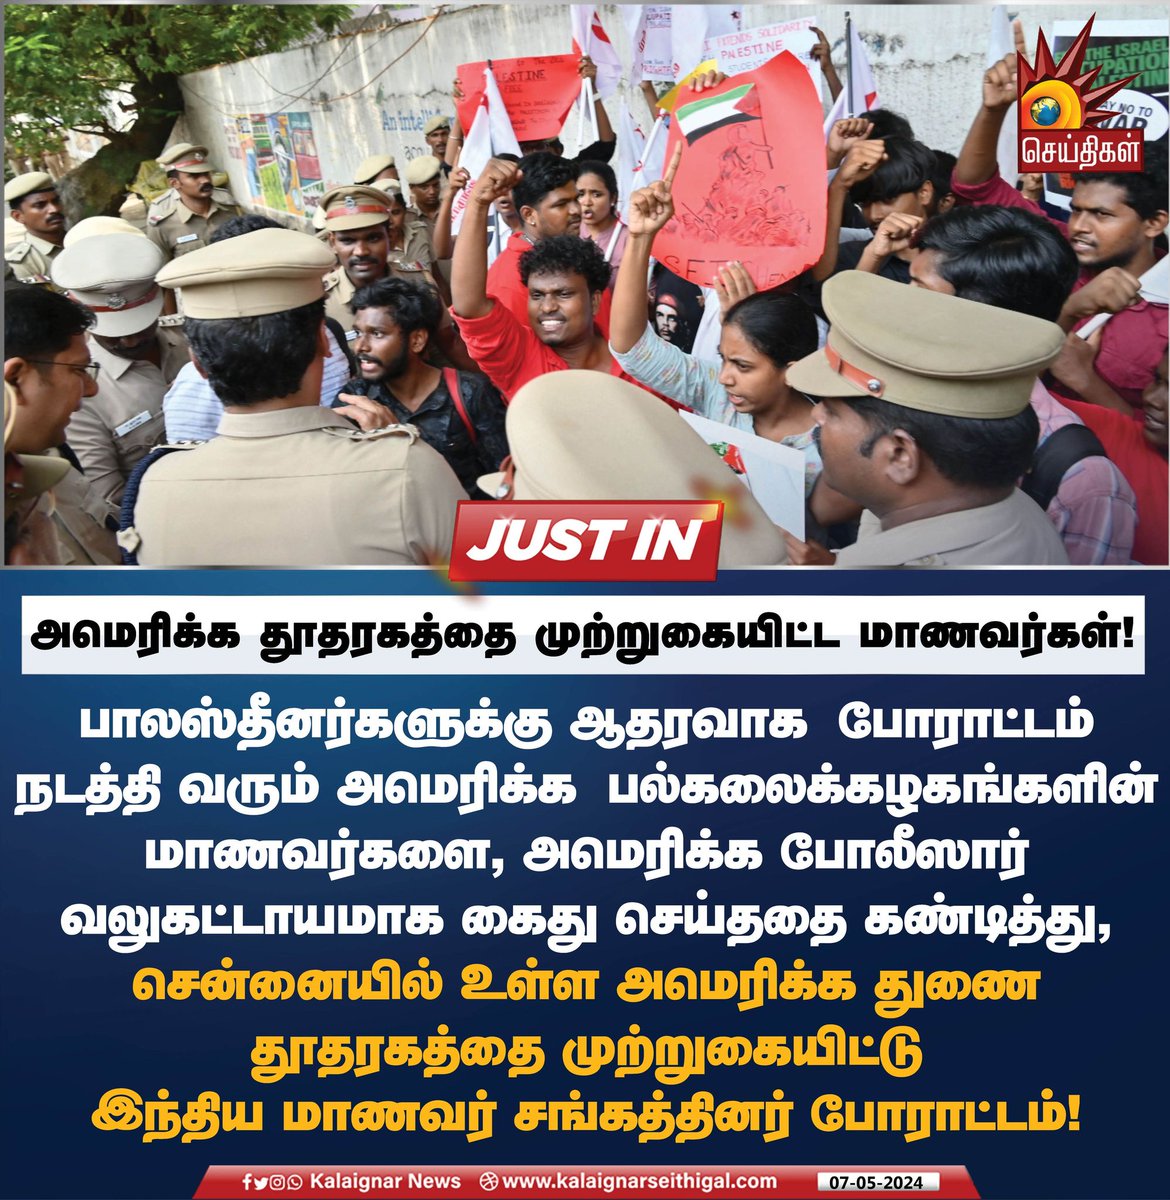 அமெரிக்க தூதரகத்தை முற்றுகையிட்ட மாணவர்கள்! #Palastine #Chennai #Israel #America #KalaignarSeithigal